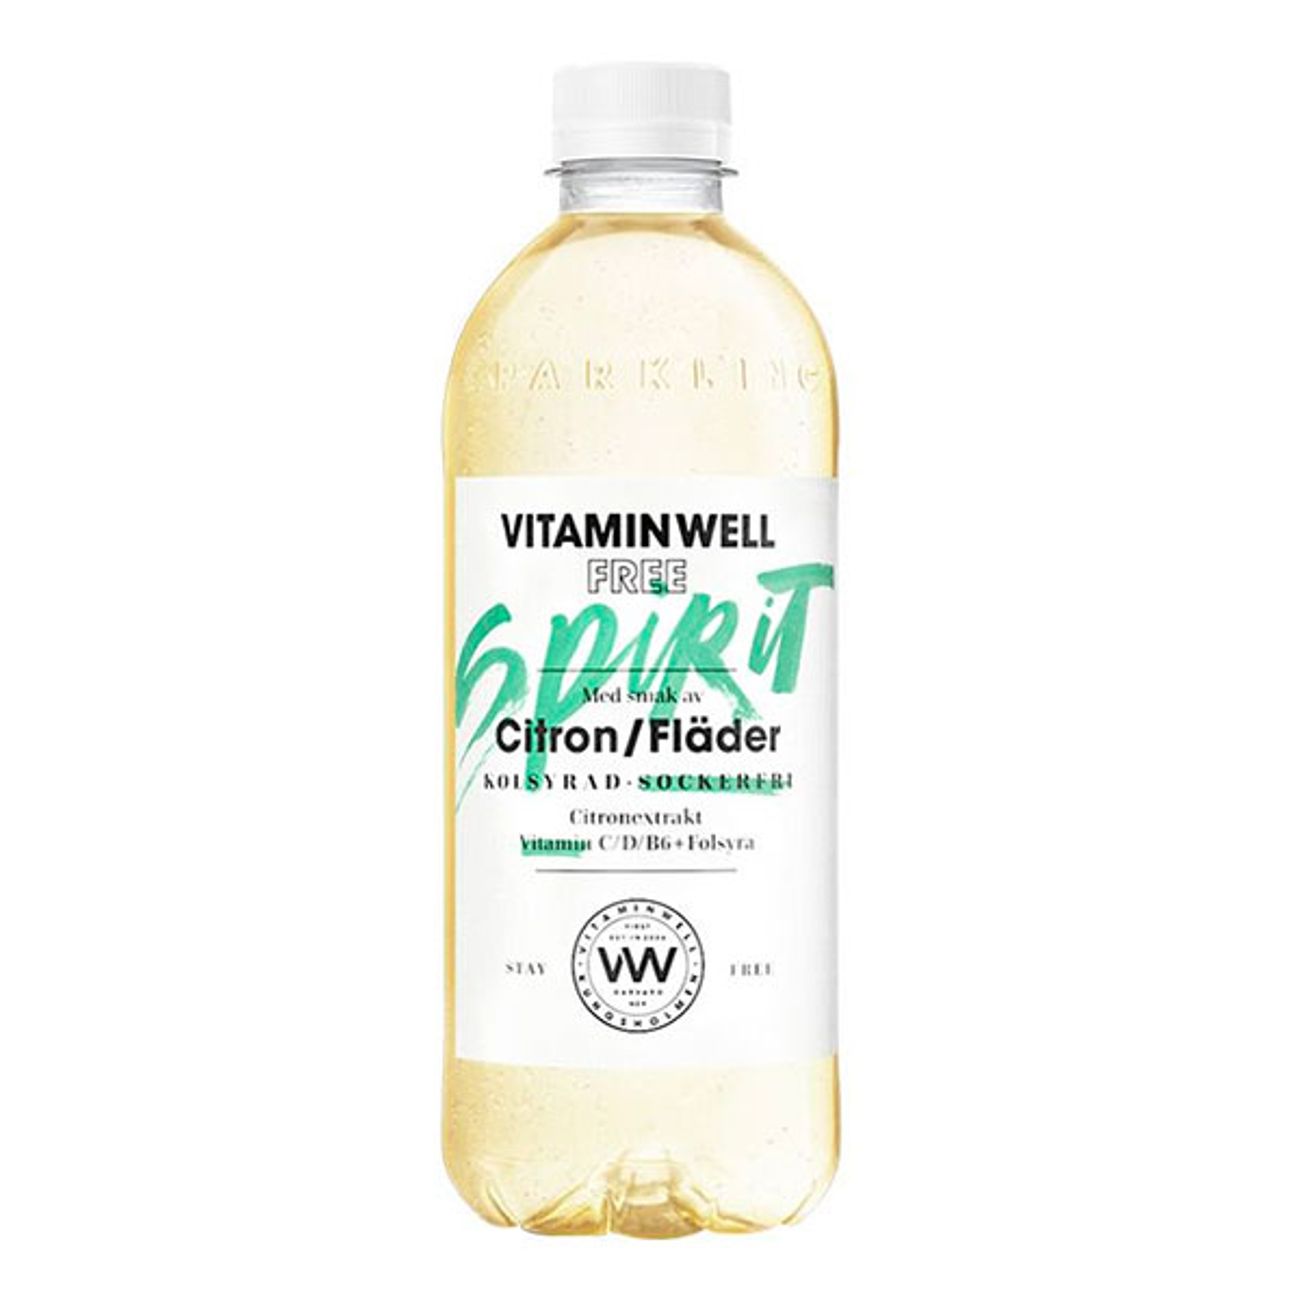 vitamin-well-free-spirit-citronflader-1